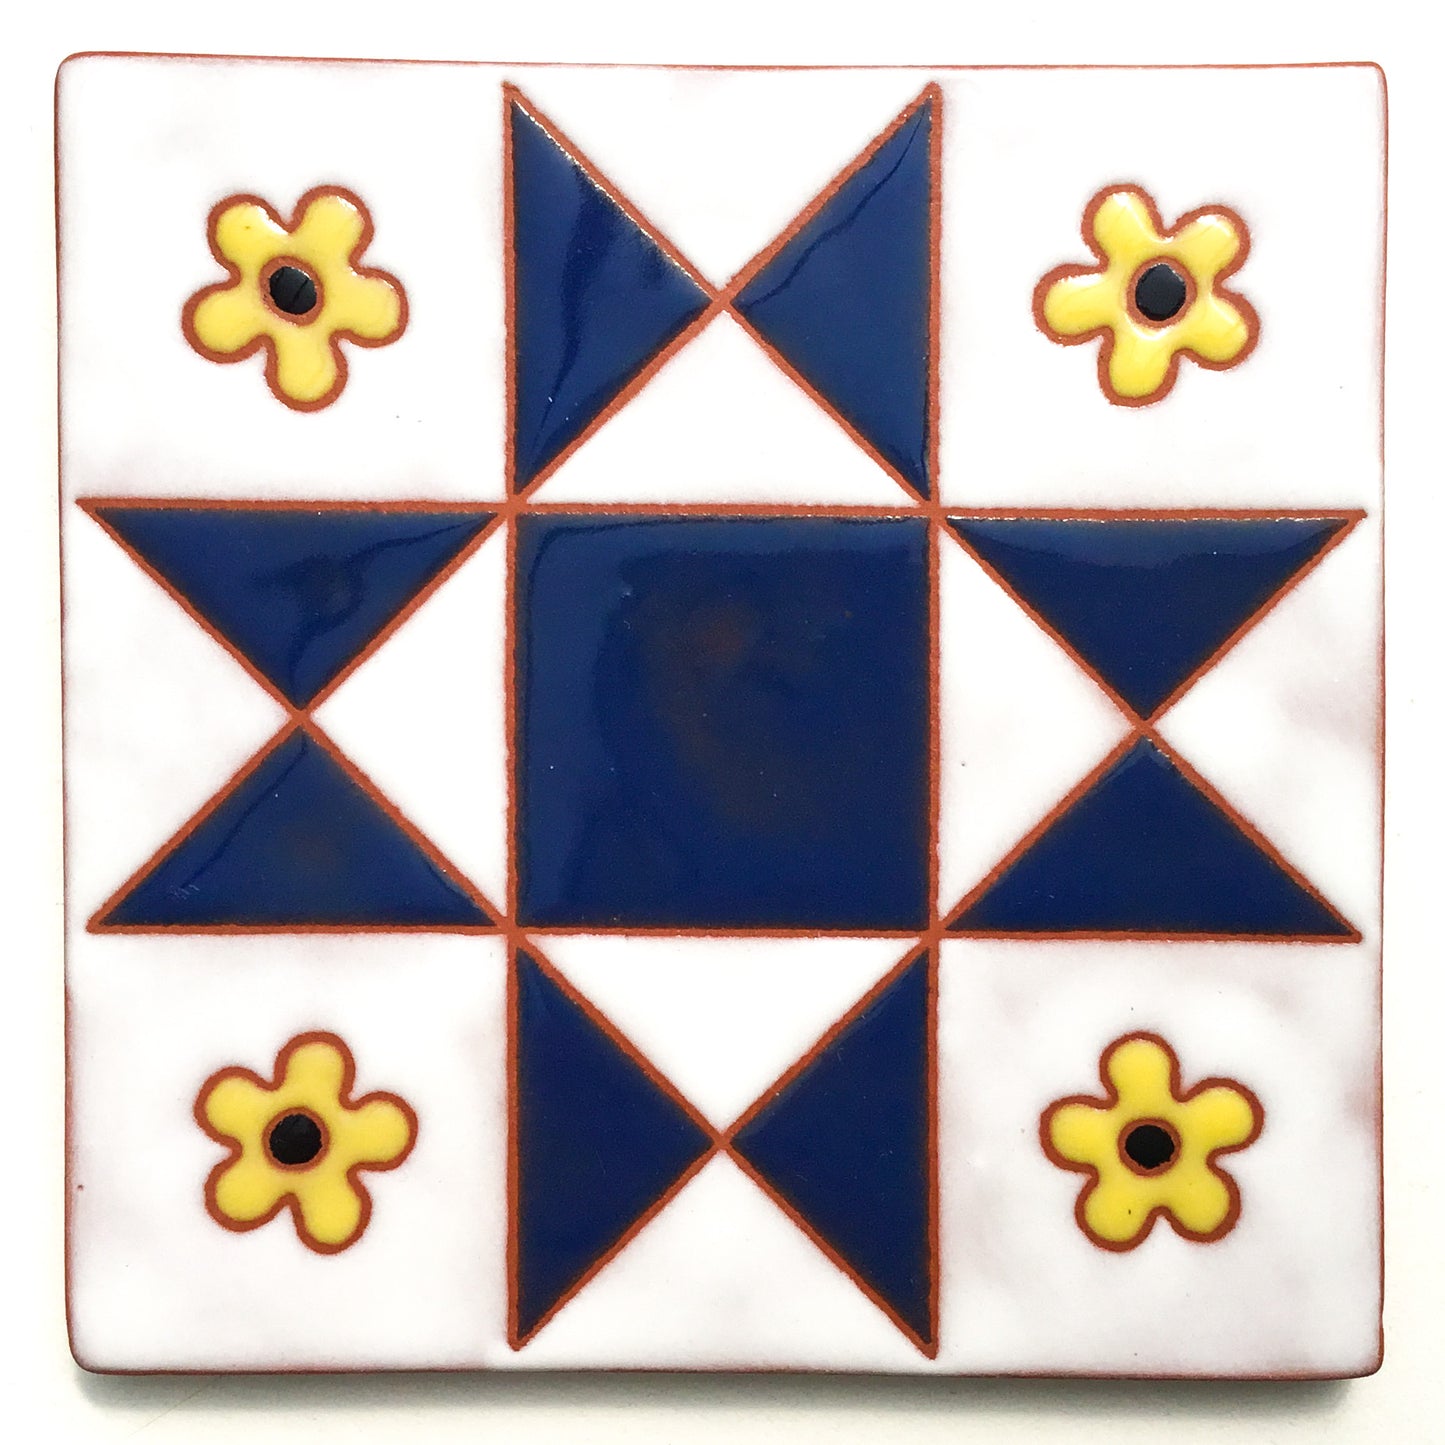 'Flowers' Ohio Star Quilt Block Coaster - Ceramic Art Tile #23